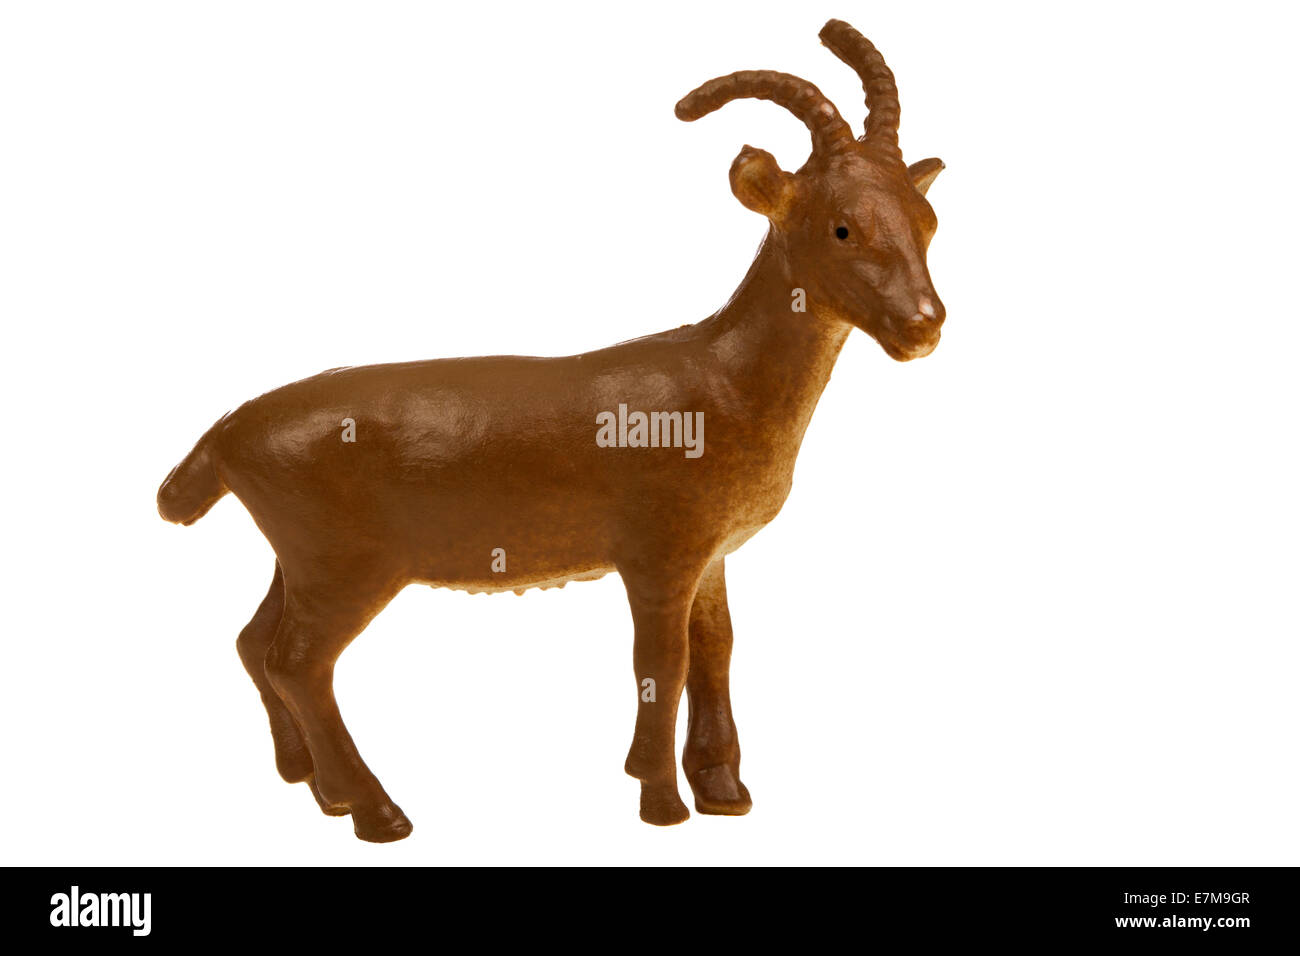 Une chèvre brunâtre jouets en plastique pour les enfants isolé sur fond blanc Banque D'Images